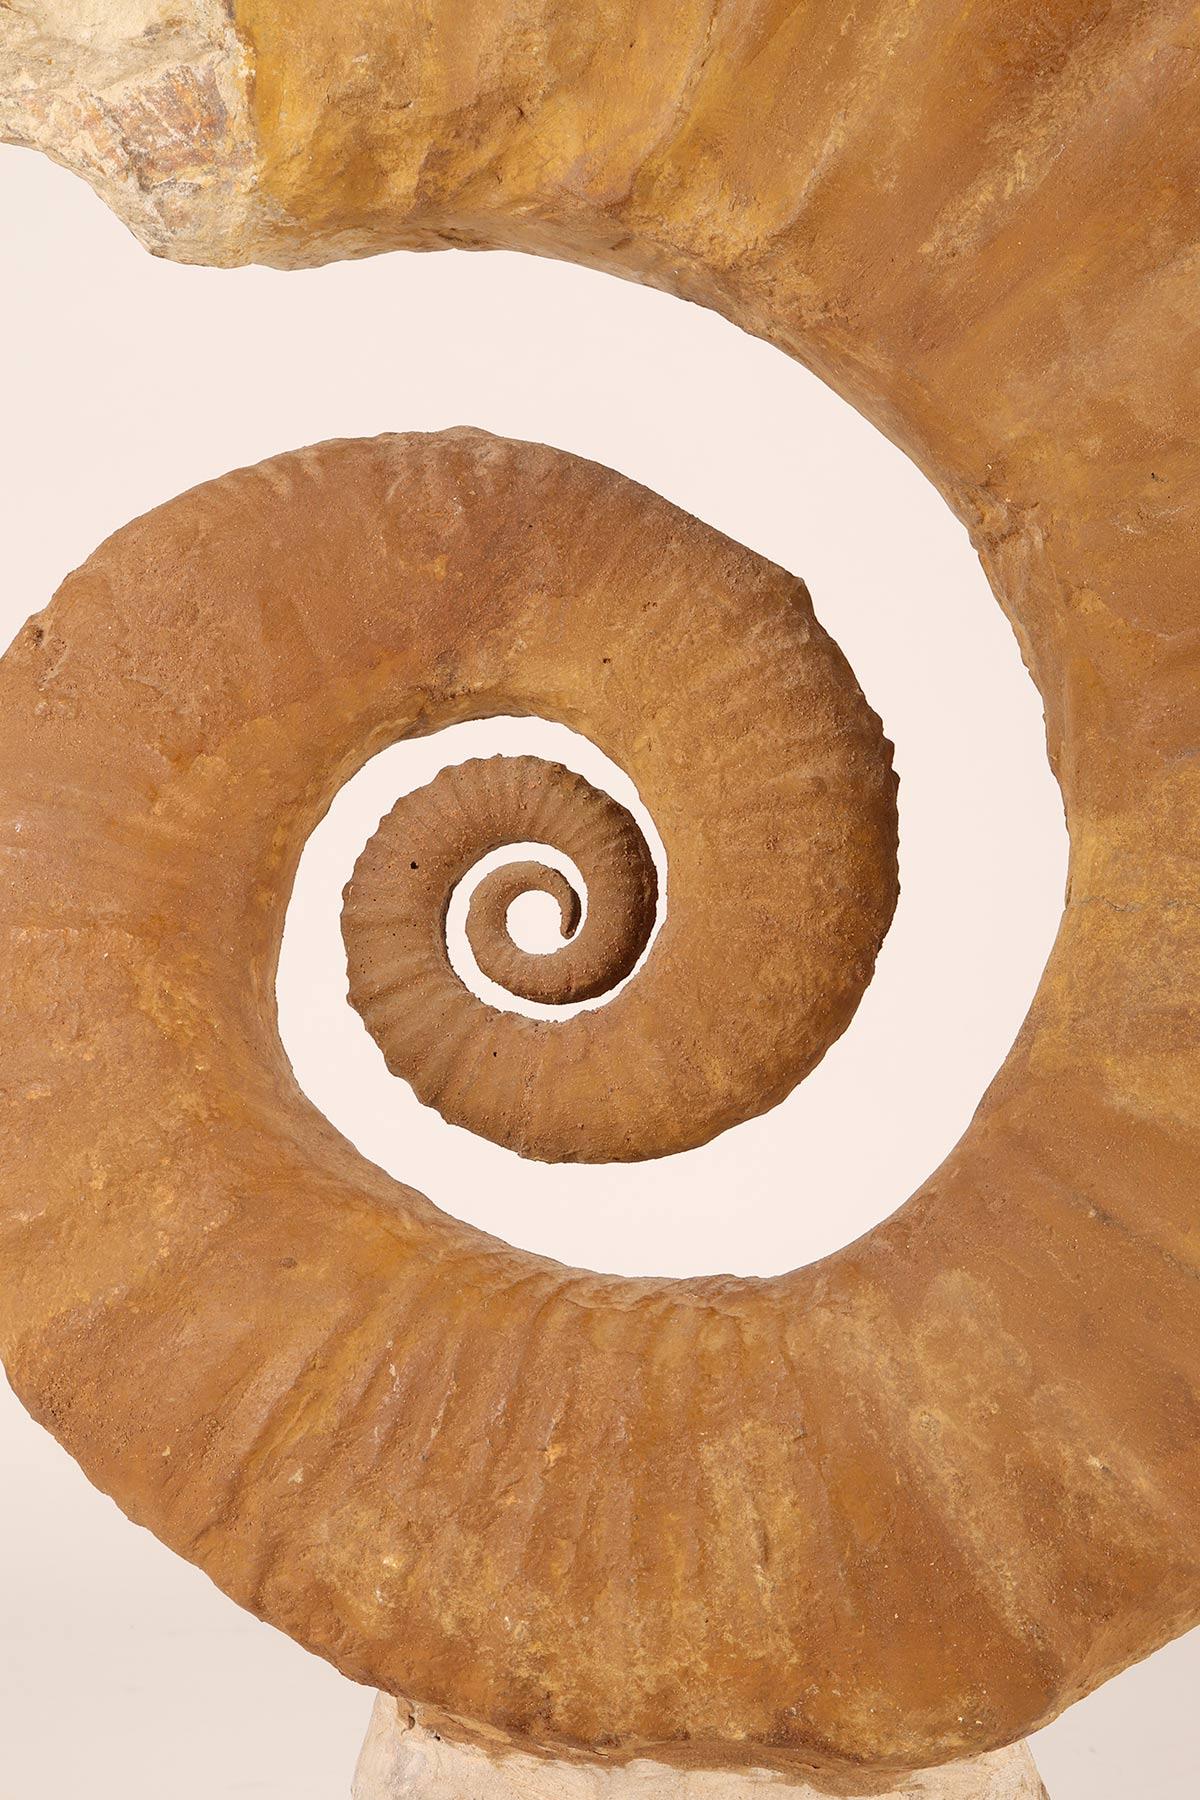 Large Open Coil Heteromorph Ammonite Fossil Specimen, France 4